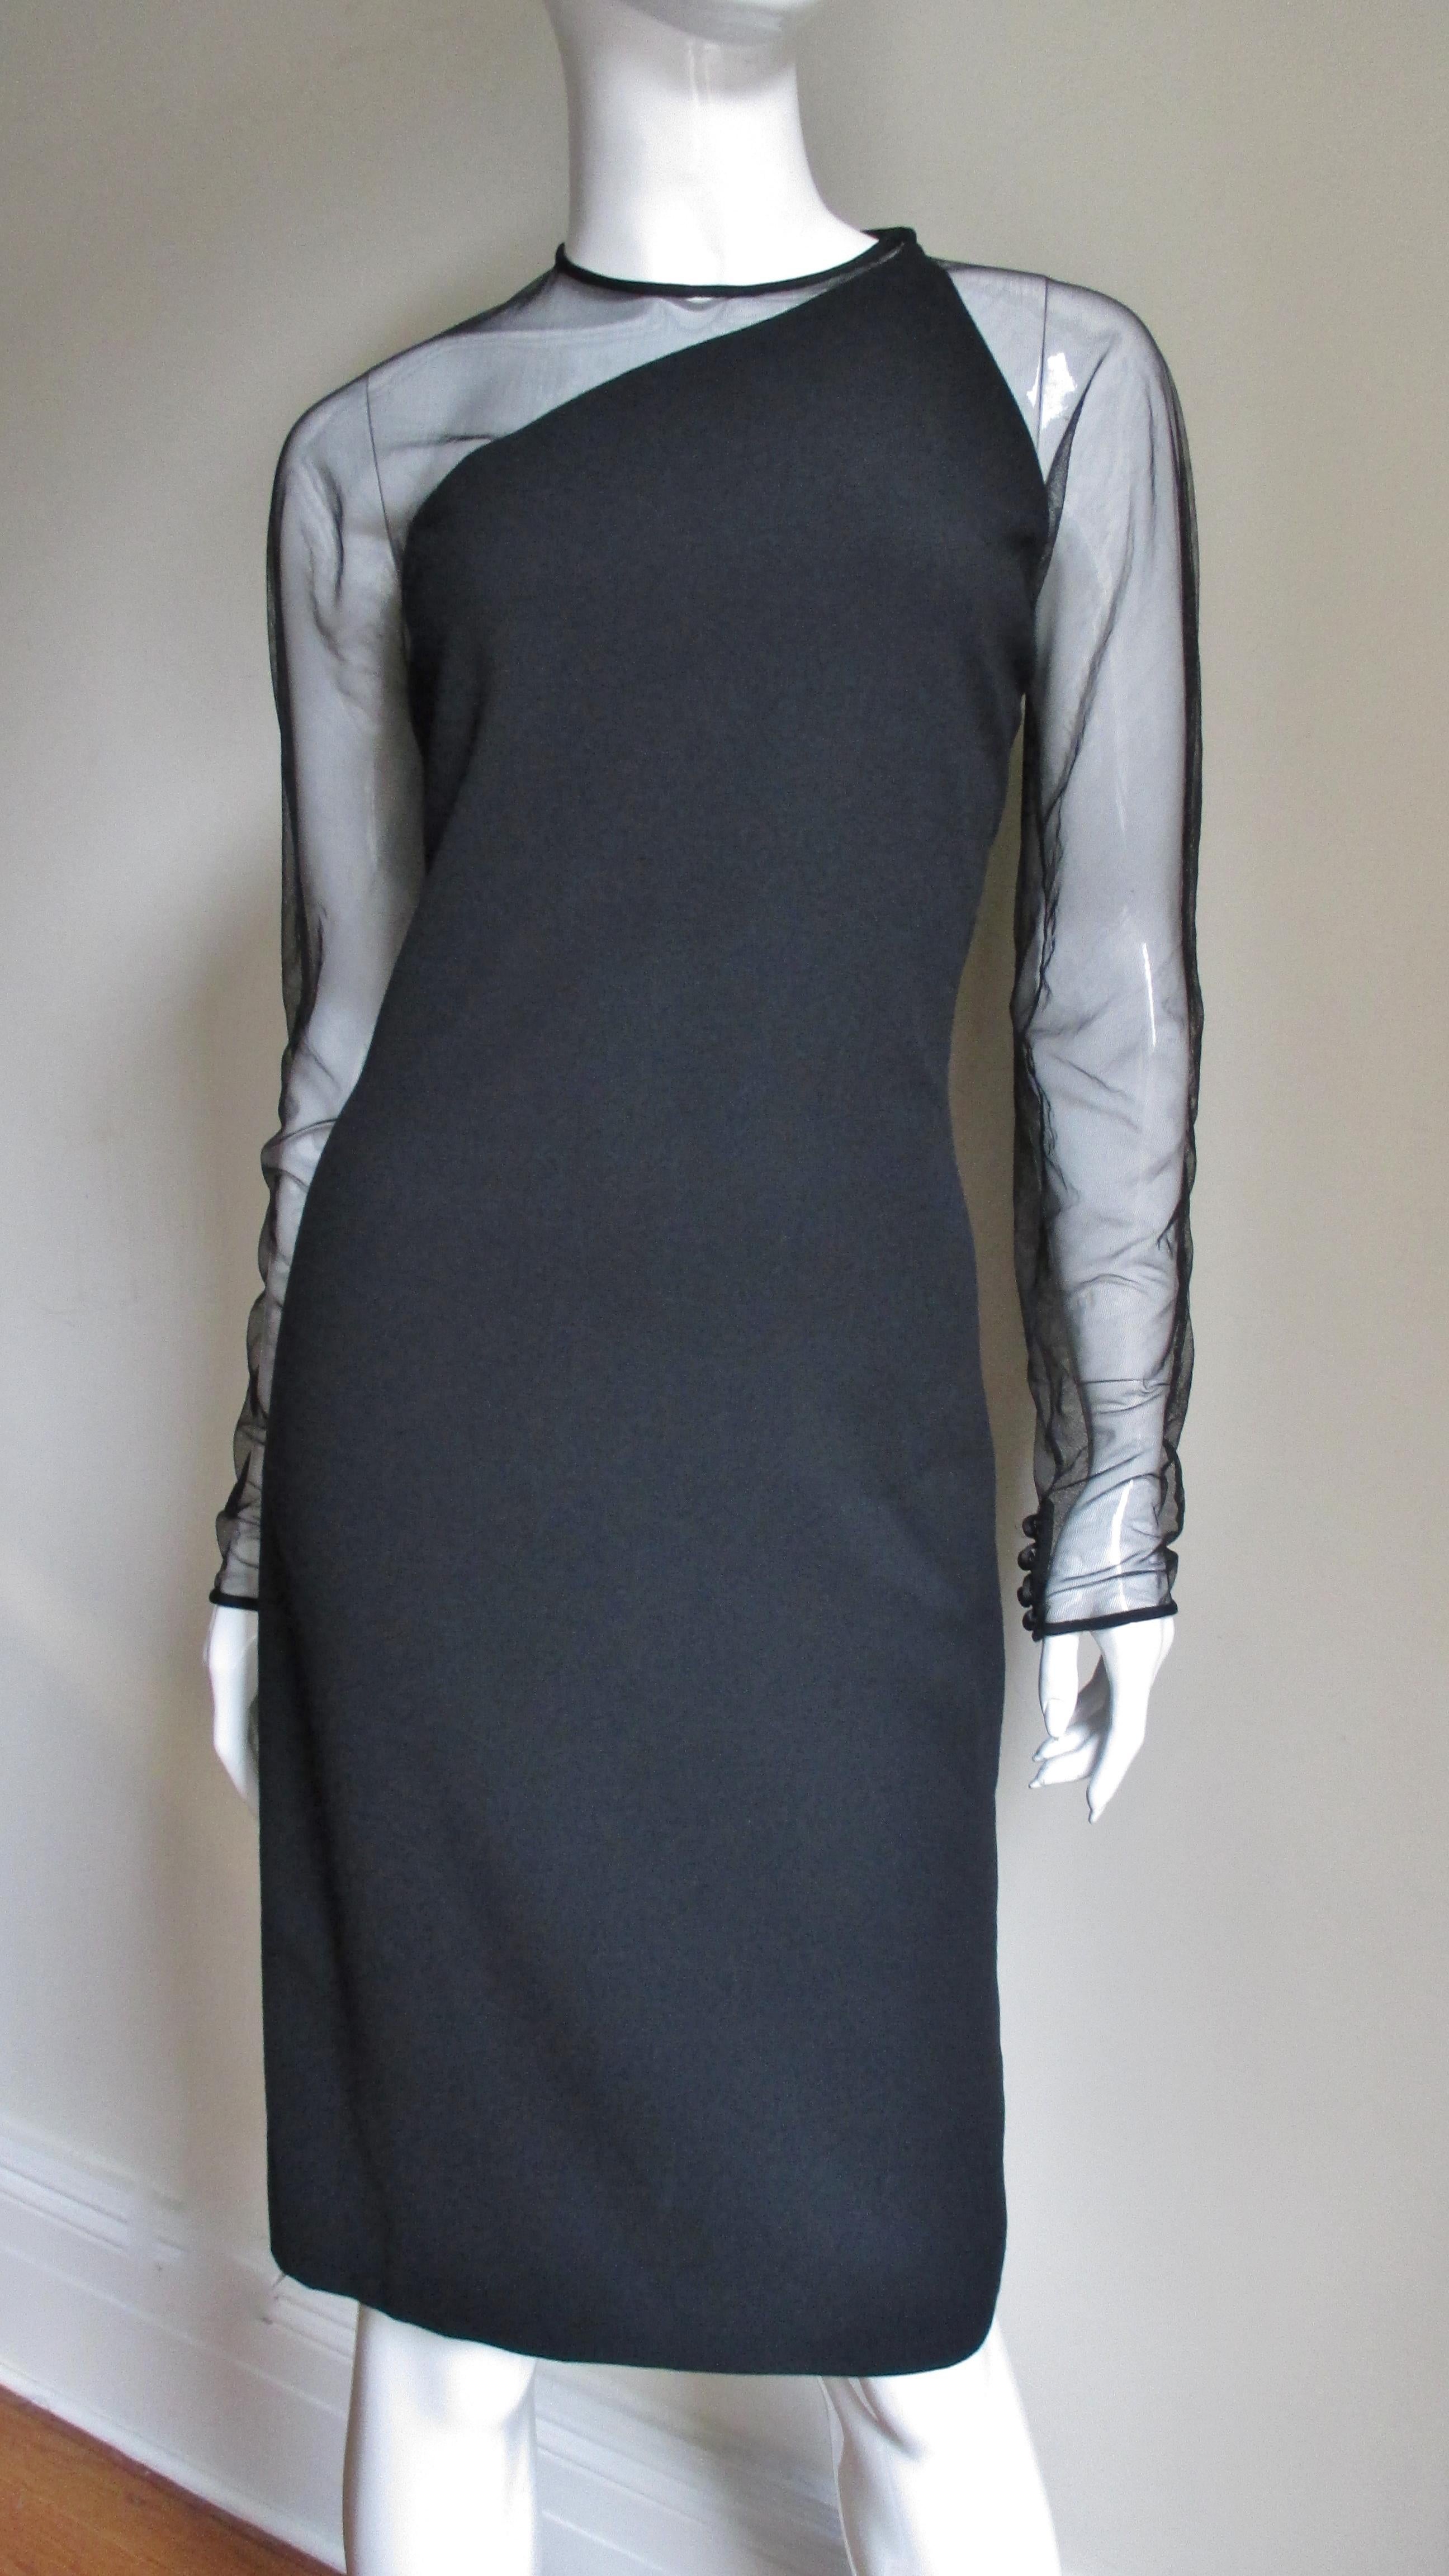 Une superbe robe noire en laine légère et filet de Gianni Versace Couture.  Il a une épaule avec des manches en maille, le haut du devant et le bas du dos asymétrique. Il est entièrement doublé, possède une fermeture à glissière dans le dos, une